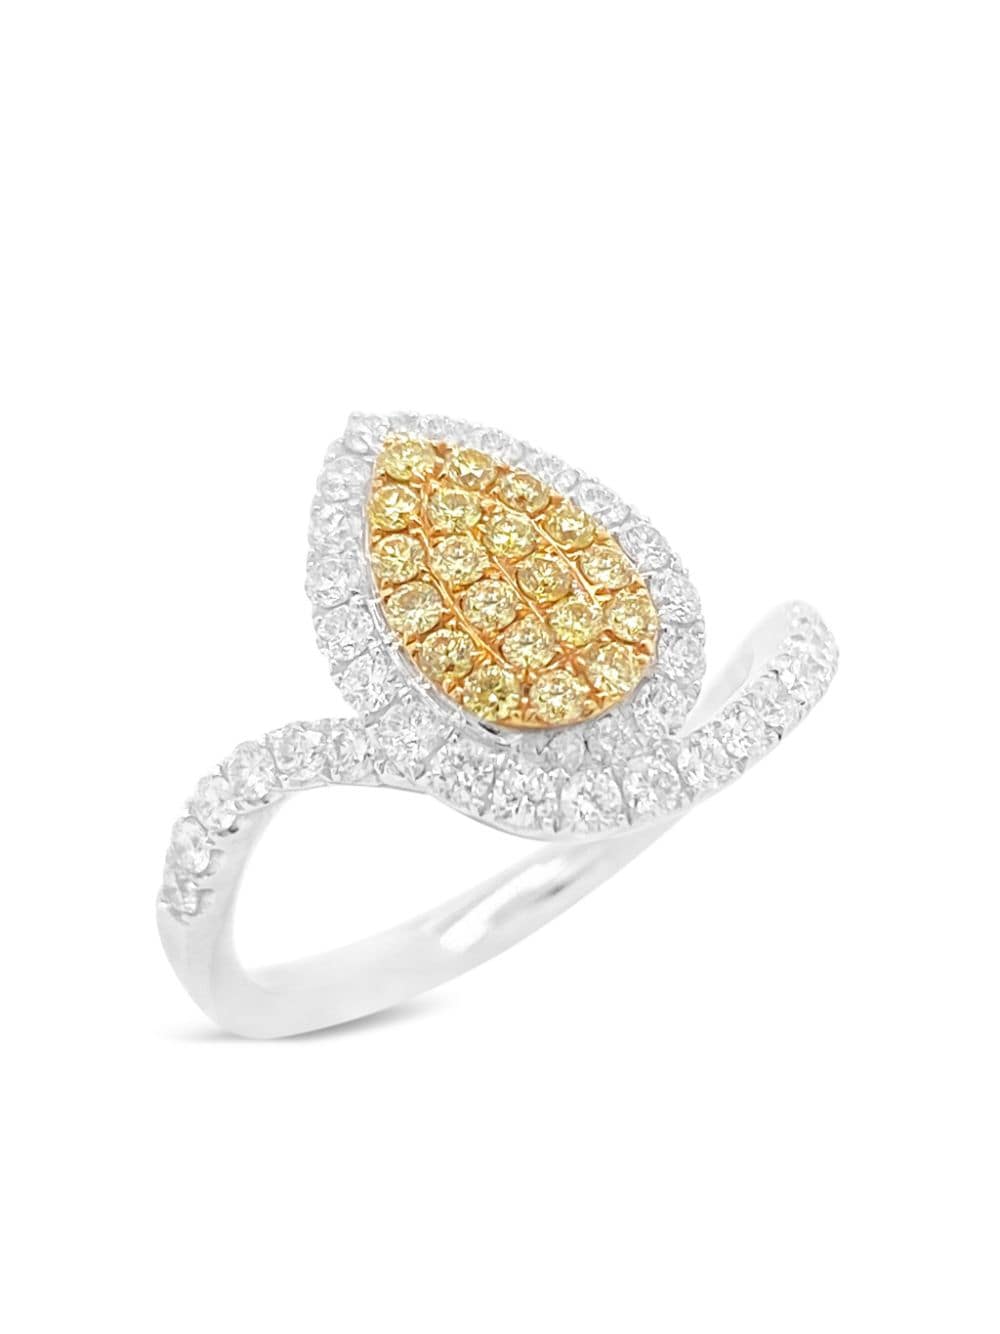 HYT Jewelry platinum yellow and white diamond ring - Gold von HYT Jewelry